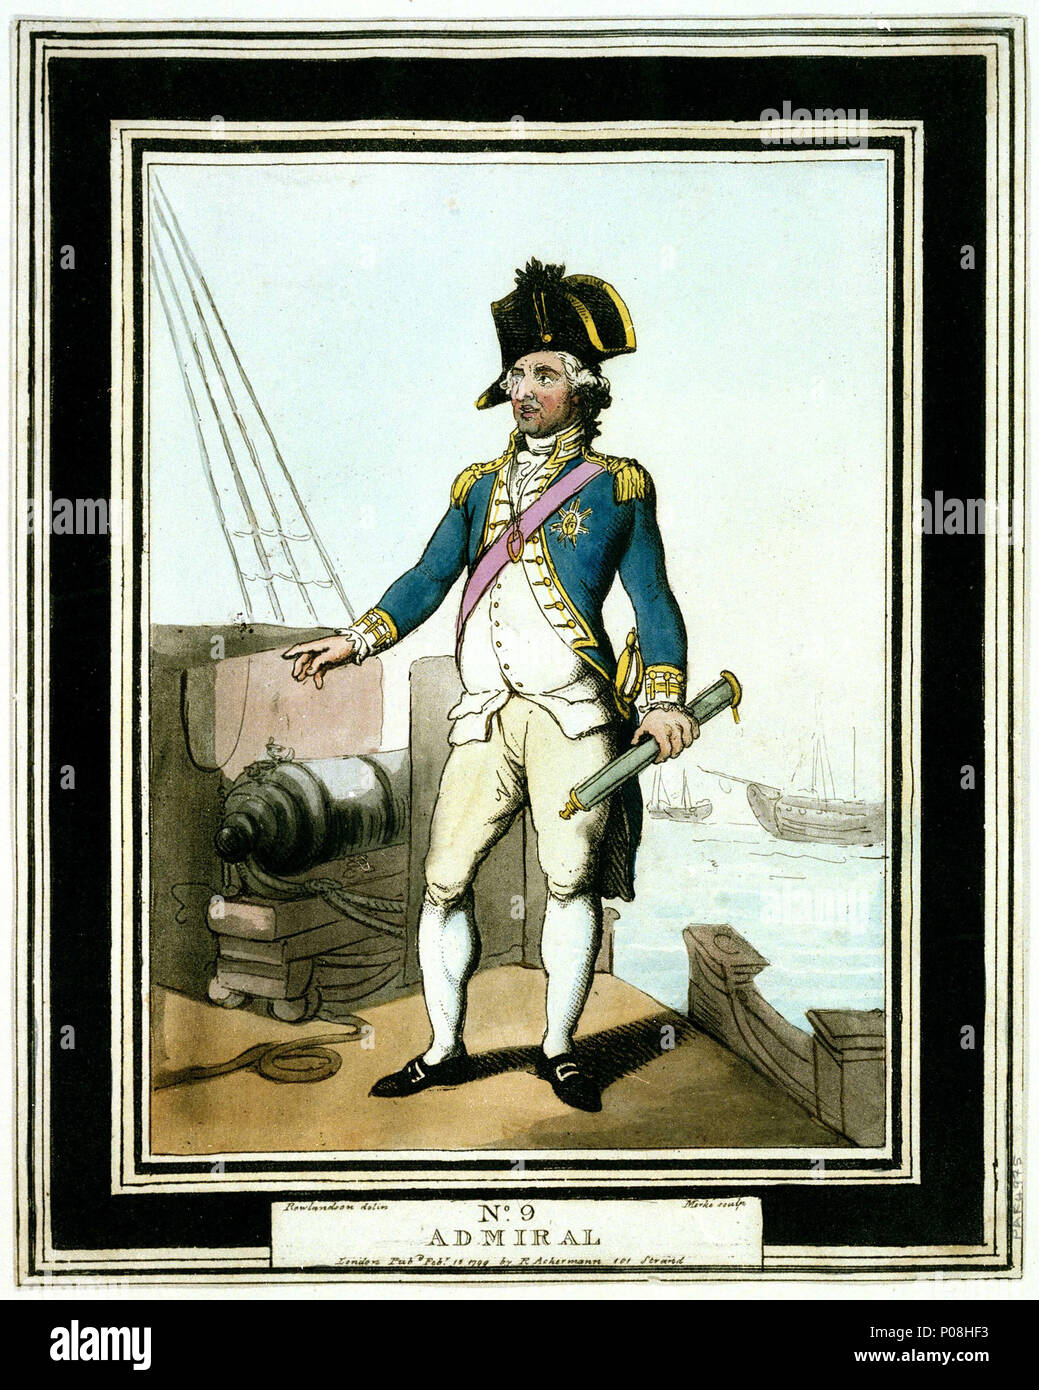 . Inglese: Ammiraglio flotte erano di solito suddiviso in tre squadroni che formate la van (avanti), il centro e la parte posteriore. La parte posteriore è stata comandata da un-ammiraglio che era subordinato alla vice-ammiraglio comandando il furgone. L'Admiral è comandata in centro squadron e aveva il comando generale di tutta la flotta. La parte posteriore- e vice-ammiragli riportato a lui. La nave di un ammiraglio è stato riconosciuto da bandiere e quindi noto come una nave ammiraglia. Admiral . Il 15 febbraio 1799. Ackermann, R (editore); Henri Merke (incisore); Rowlandson, Thomas (artista) 267 Admiral RMG PW4975 Foto Stock